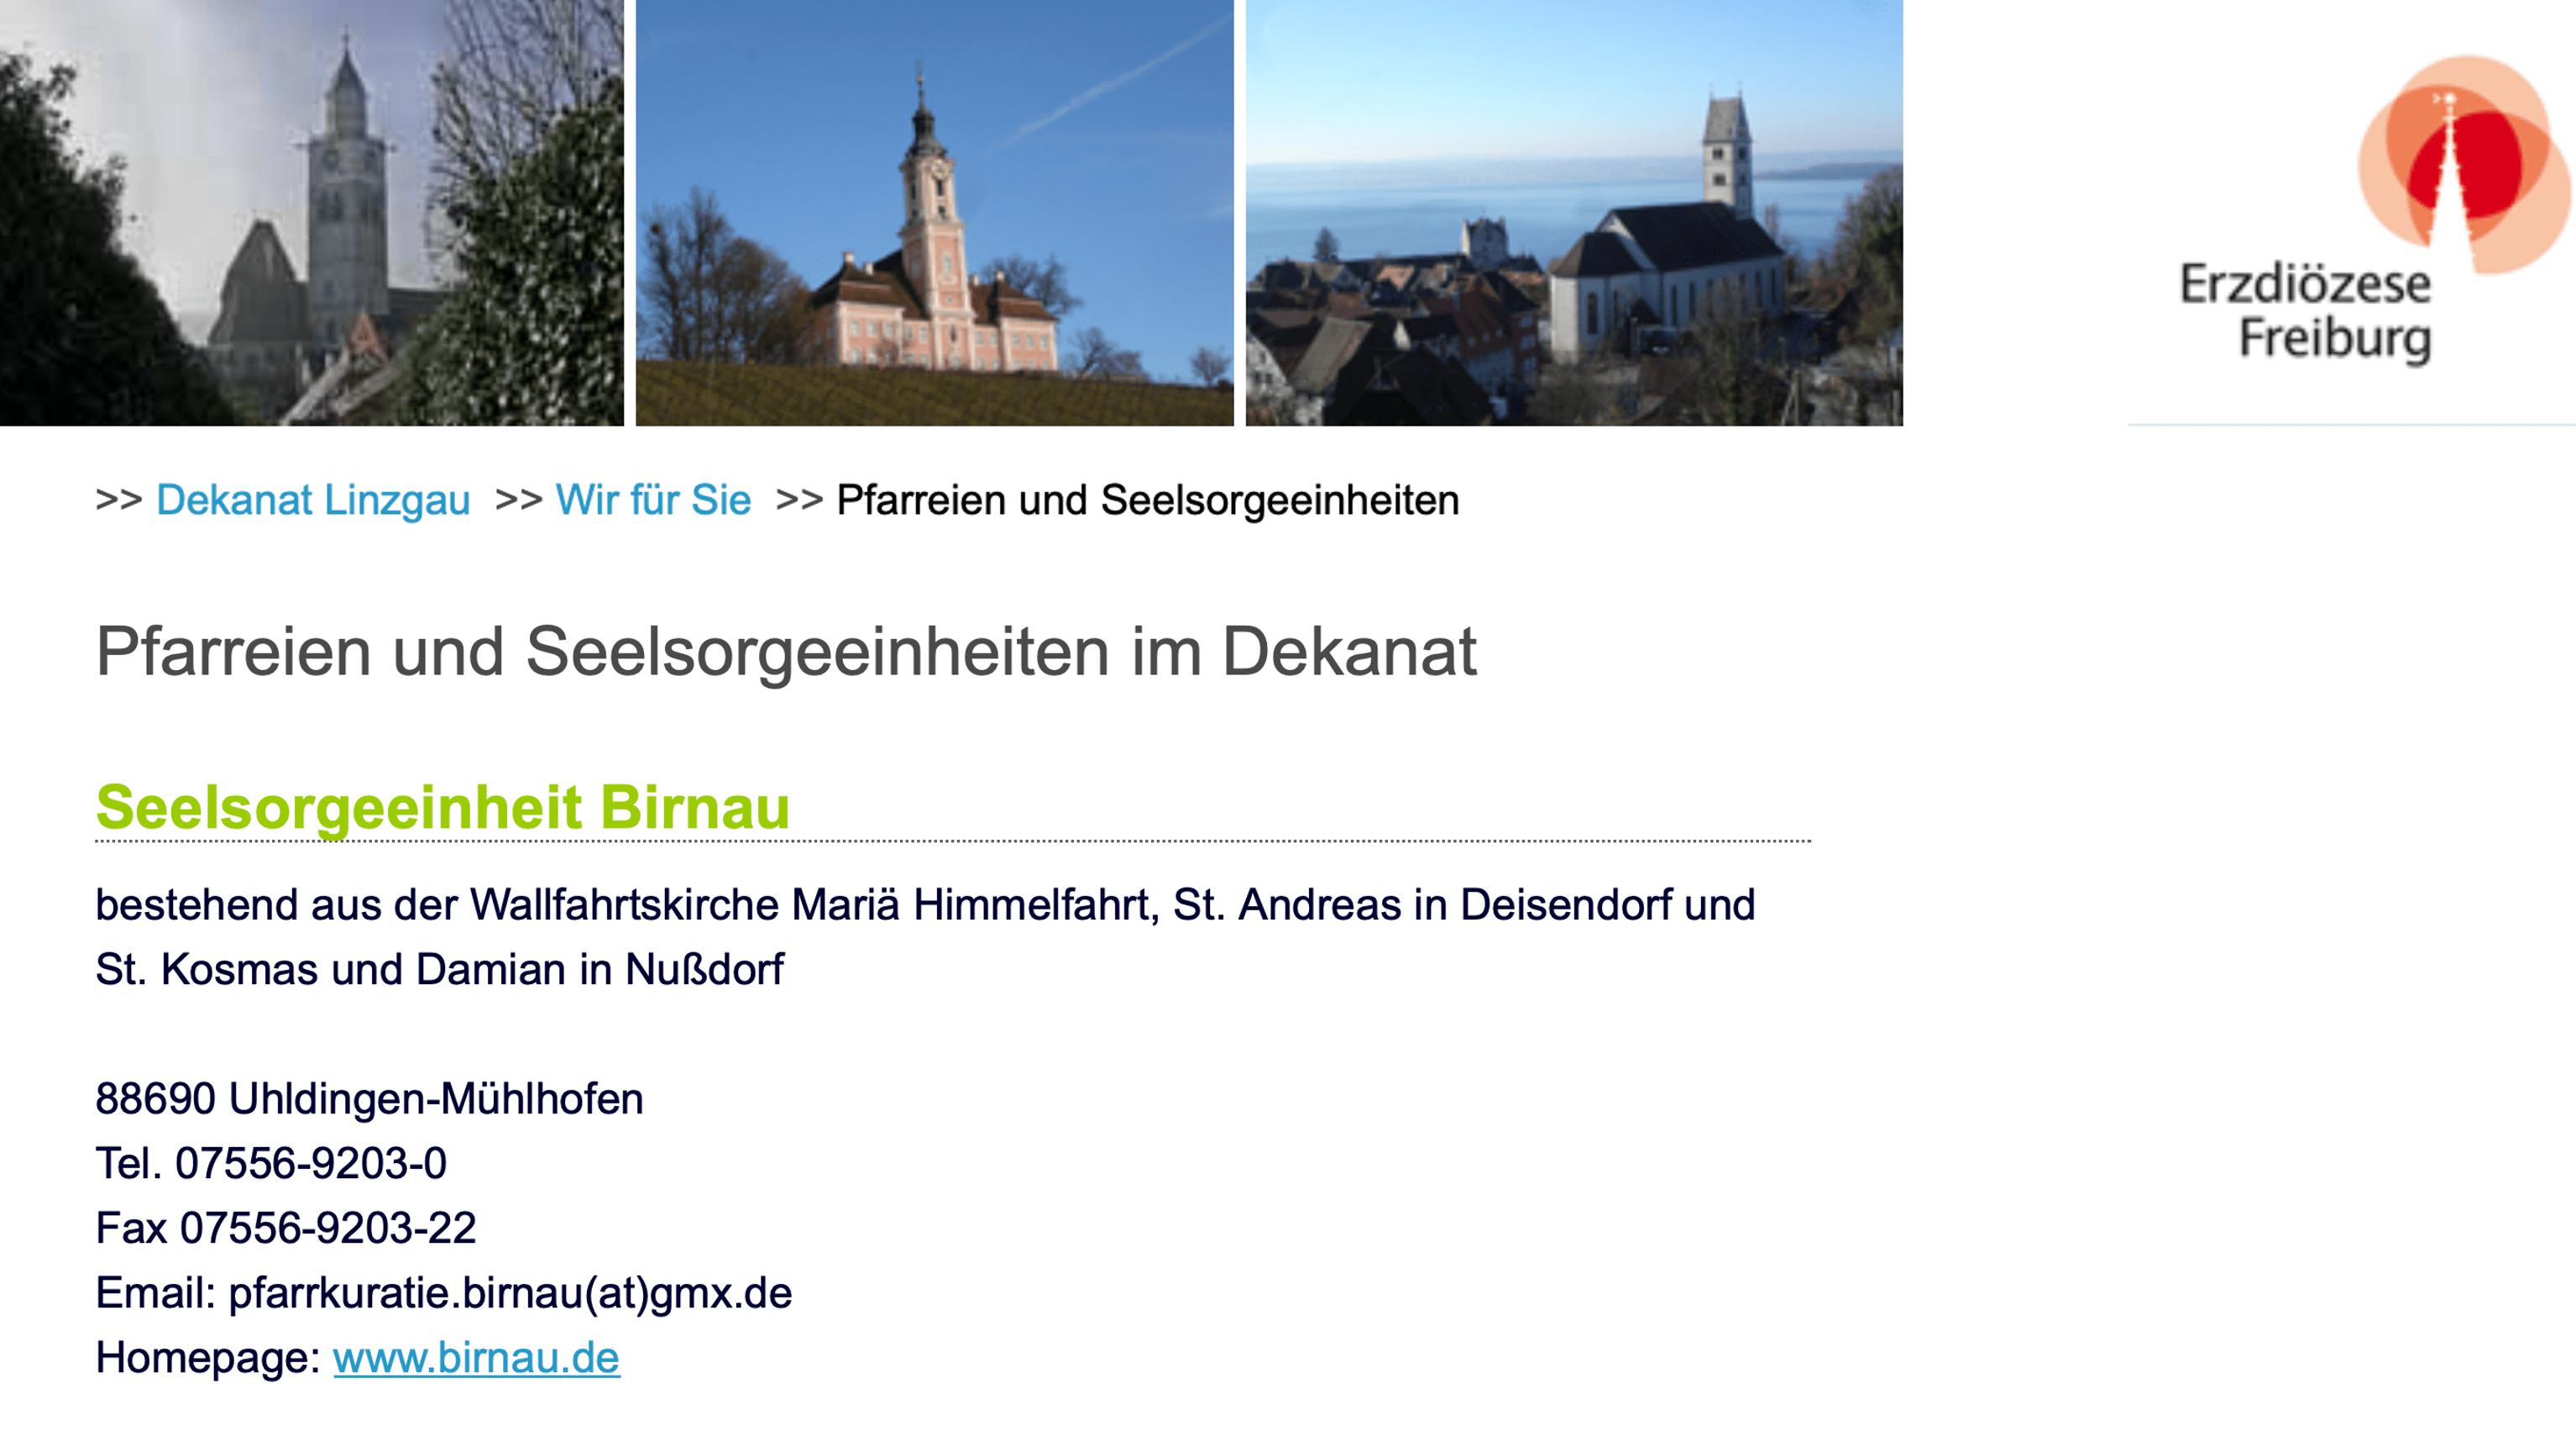 Ein einfache Internetsuche auf den Webseiten des Bistums hätte gezeigt, dass die Wallfahrtskirche in Birnau zum Erzbistum Freiburg gehört.